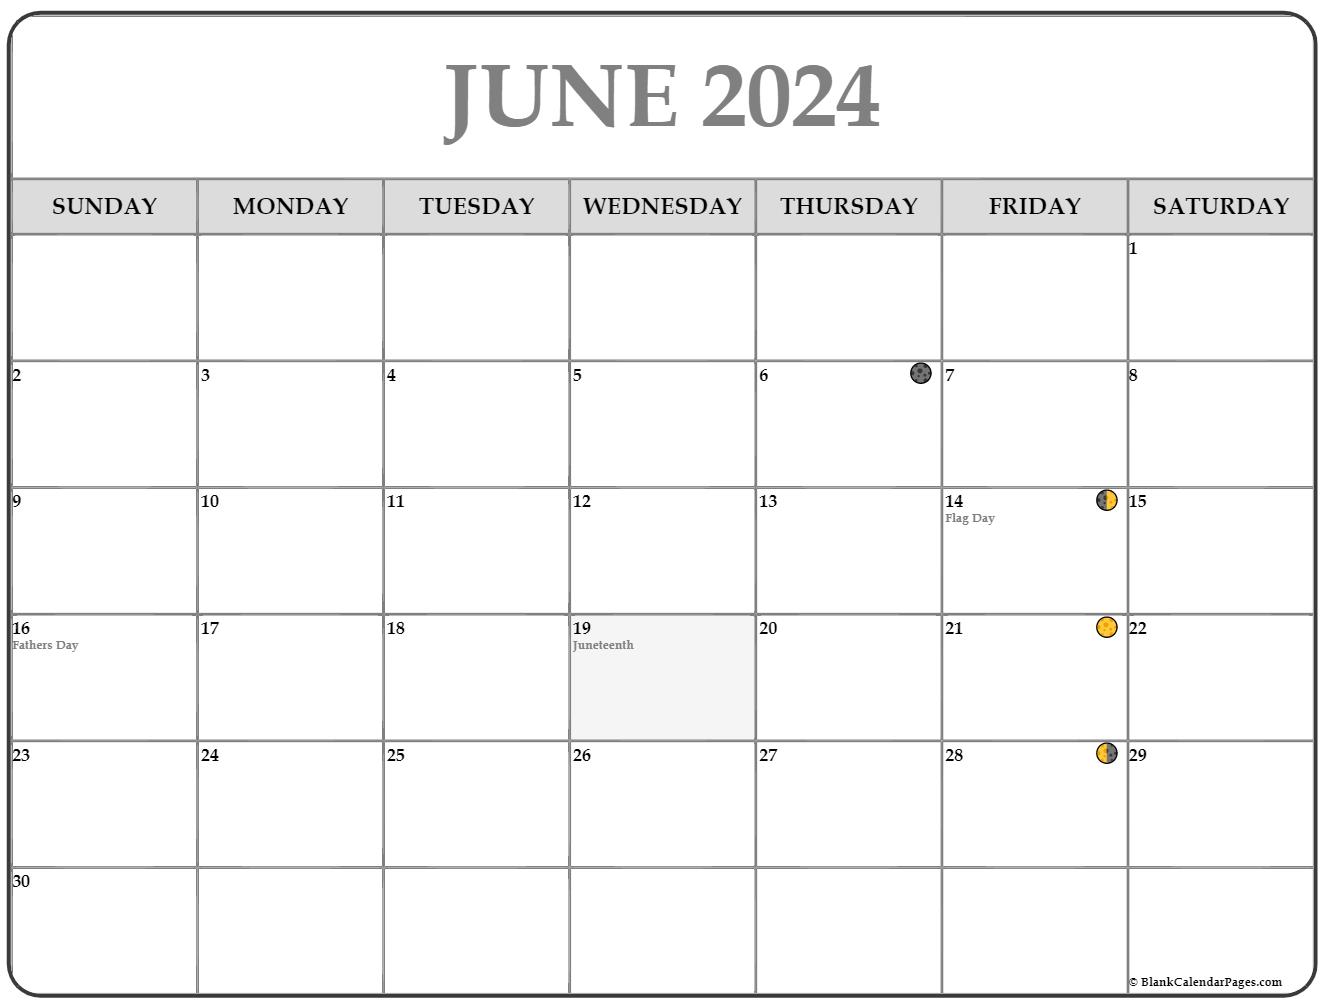 Moon Calendar June 2022 June 2021 Lunar Calendar | Moon Phase Calendar